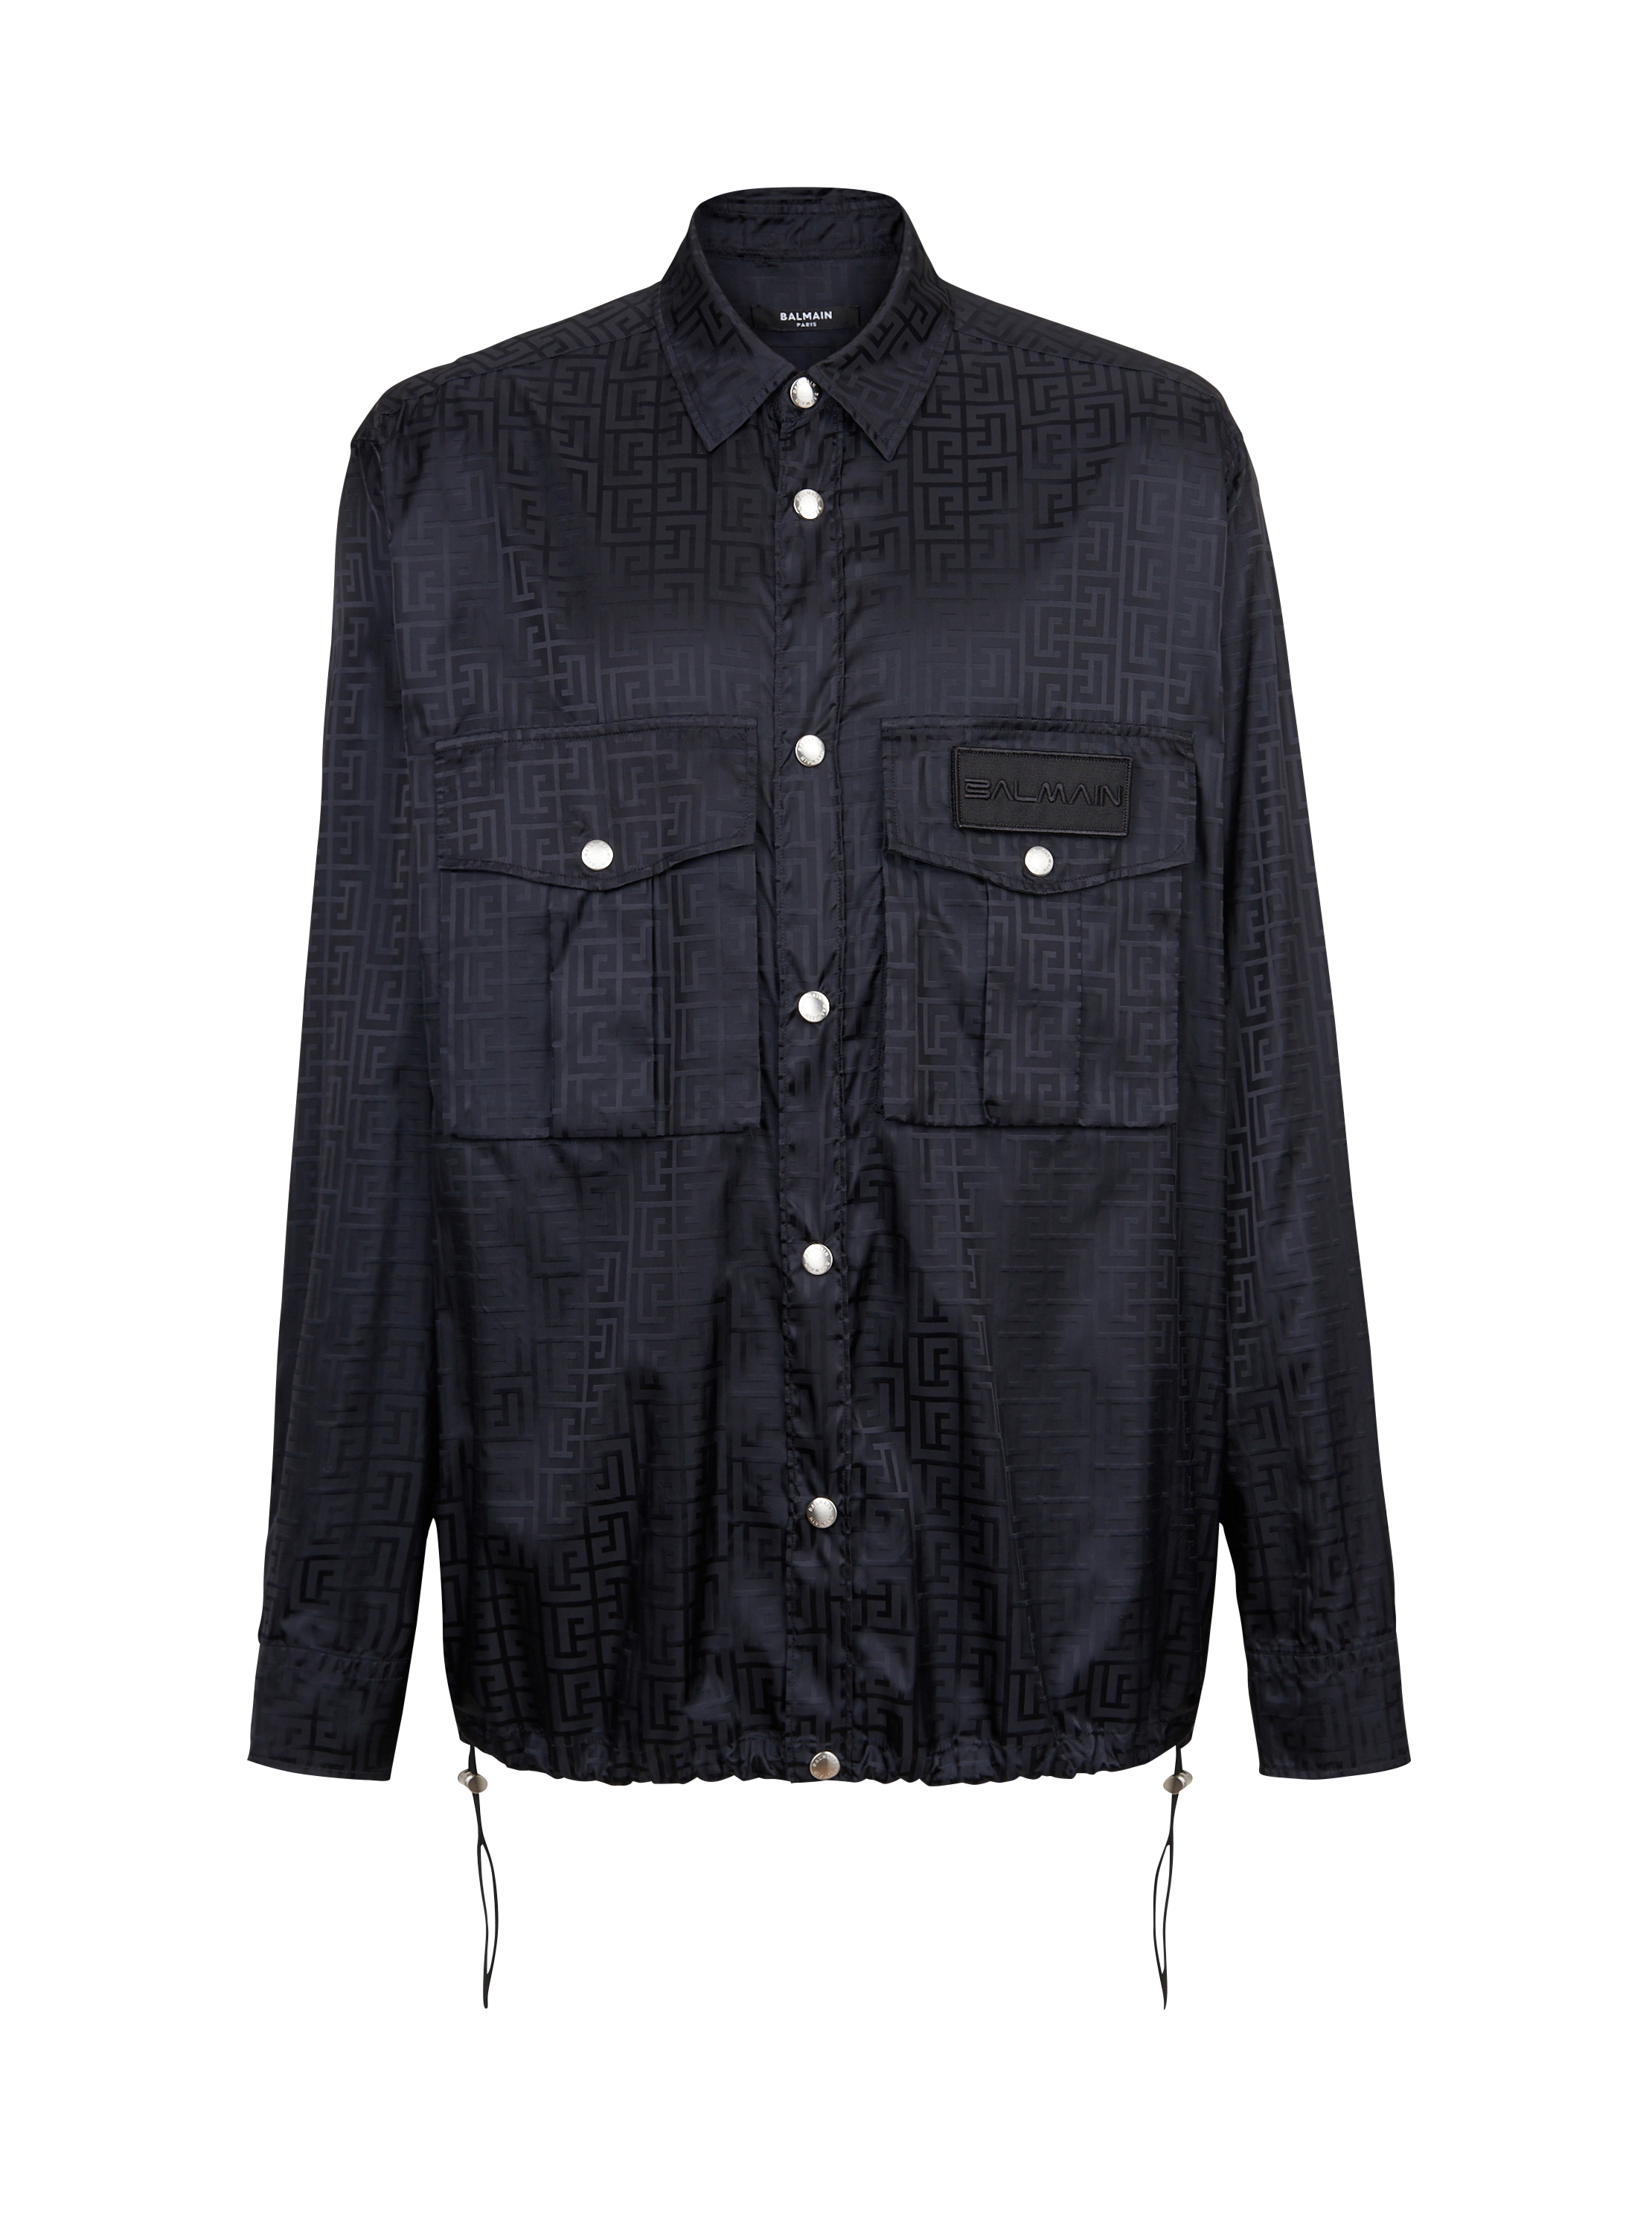 Camicia in nylon con monogramma Balmain, nero, hi-res